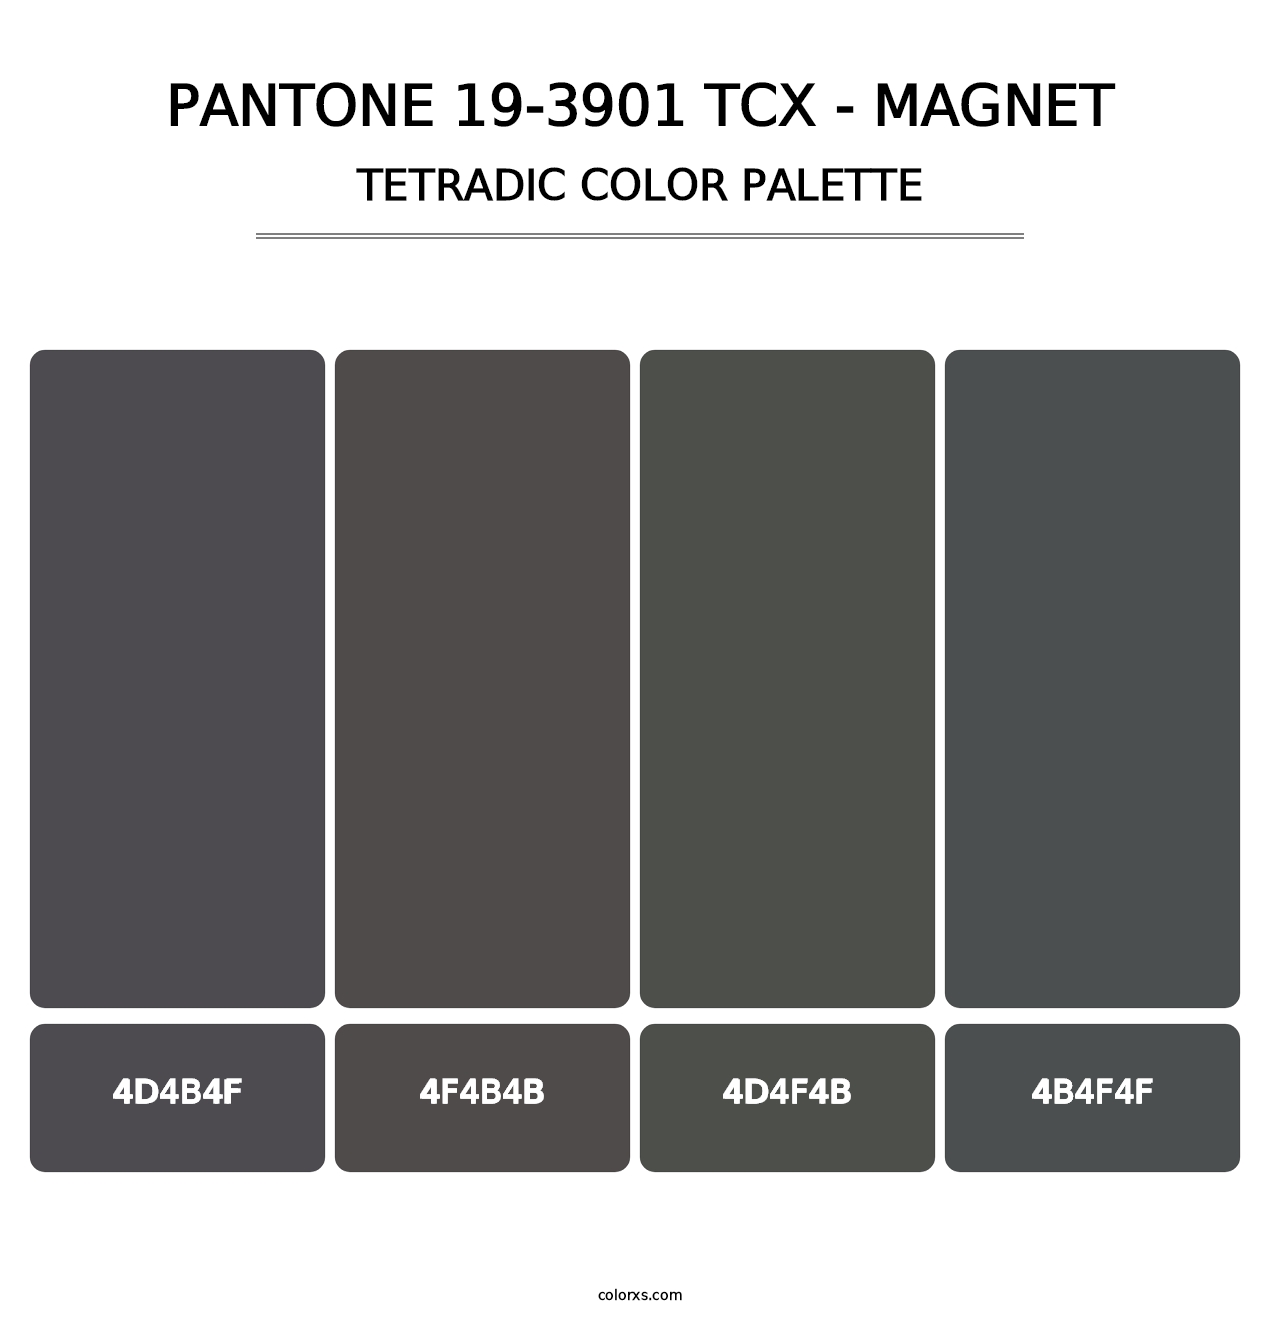 PANTONE 19-3901 TCX - Magnet - Tetradic Color Palette